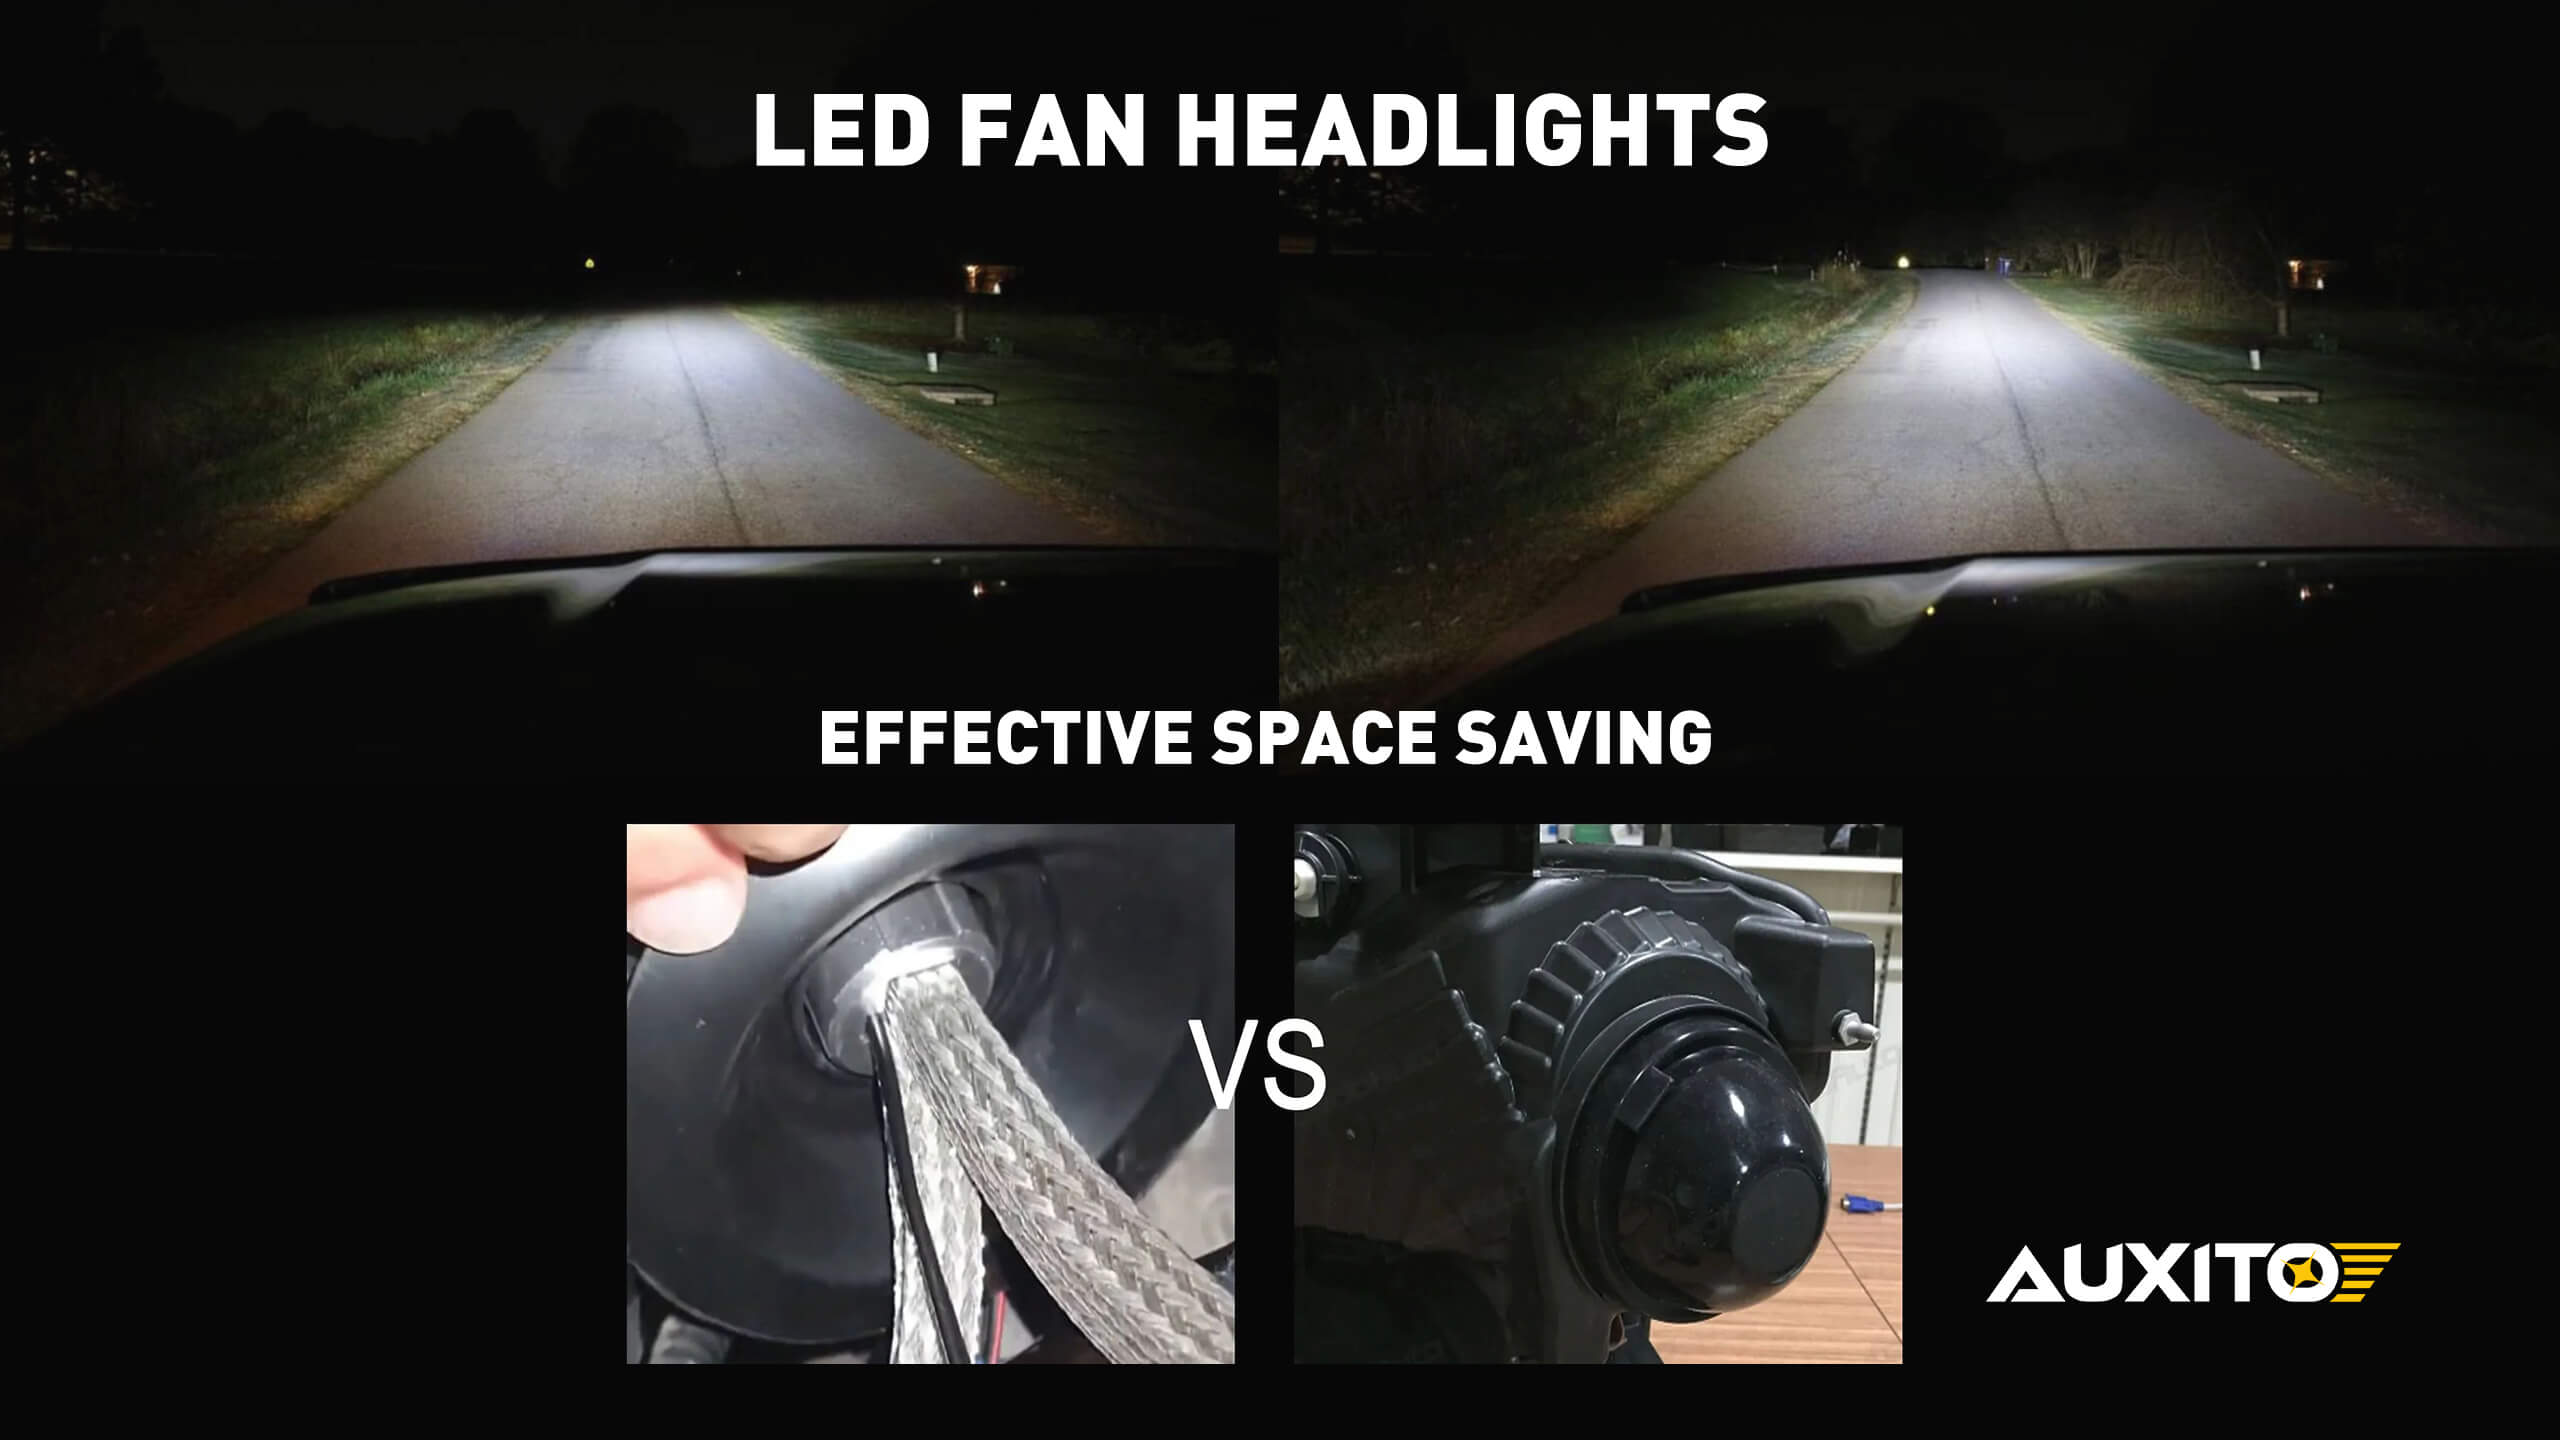 Which is better for heat dissipation: Fanless vs. Fan LED